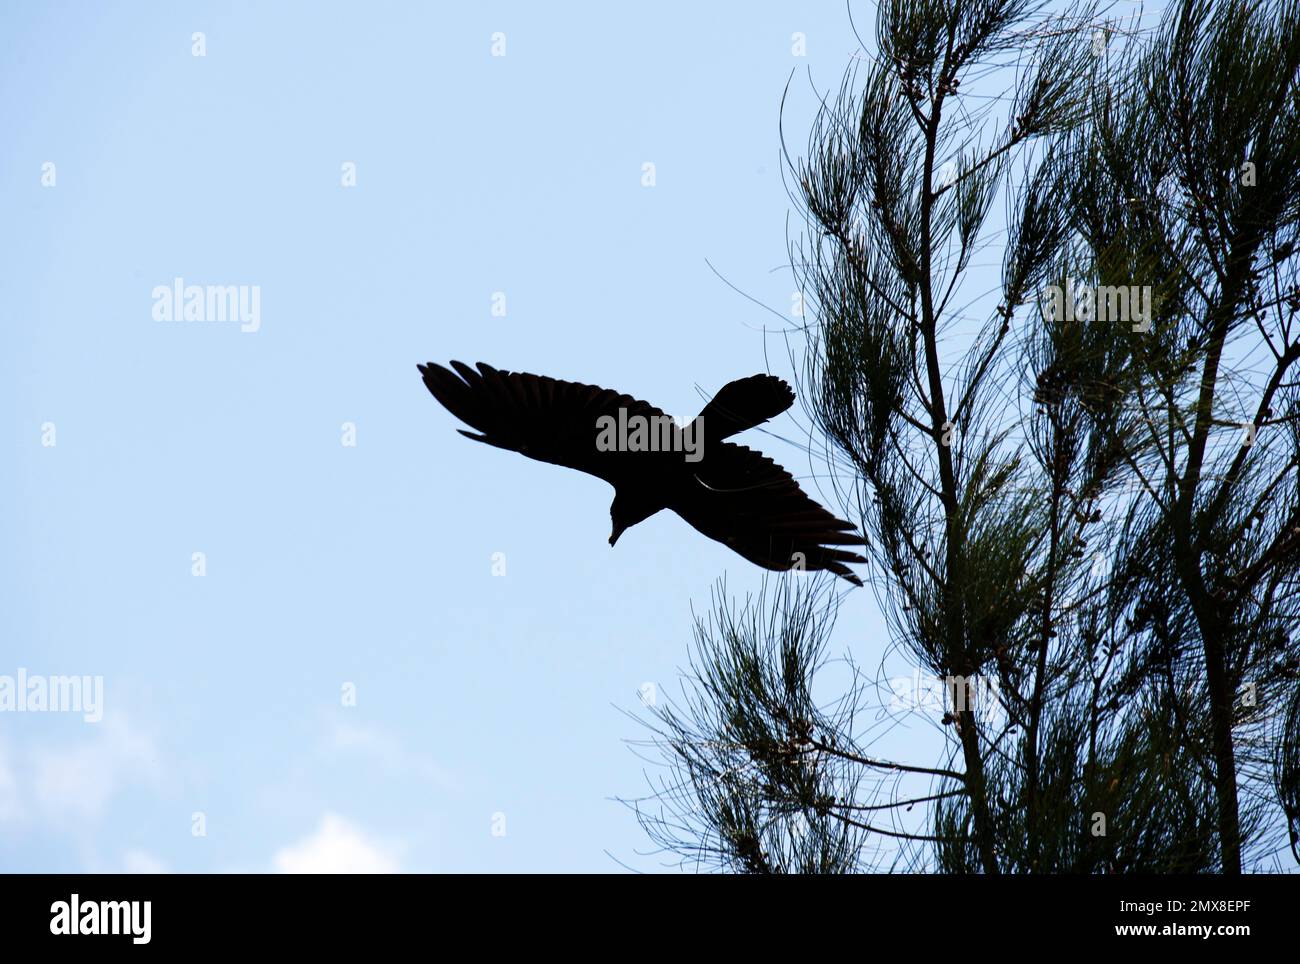 Ein australischer Gemeiner Rabe (Corvus corax), der von einem Baum in Sydney, NSW, Australien startet (Foto: Tara Chand Malhotra) Stockfoto